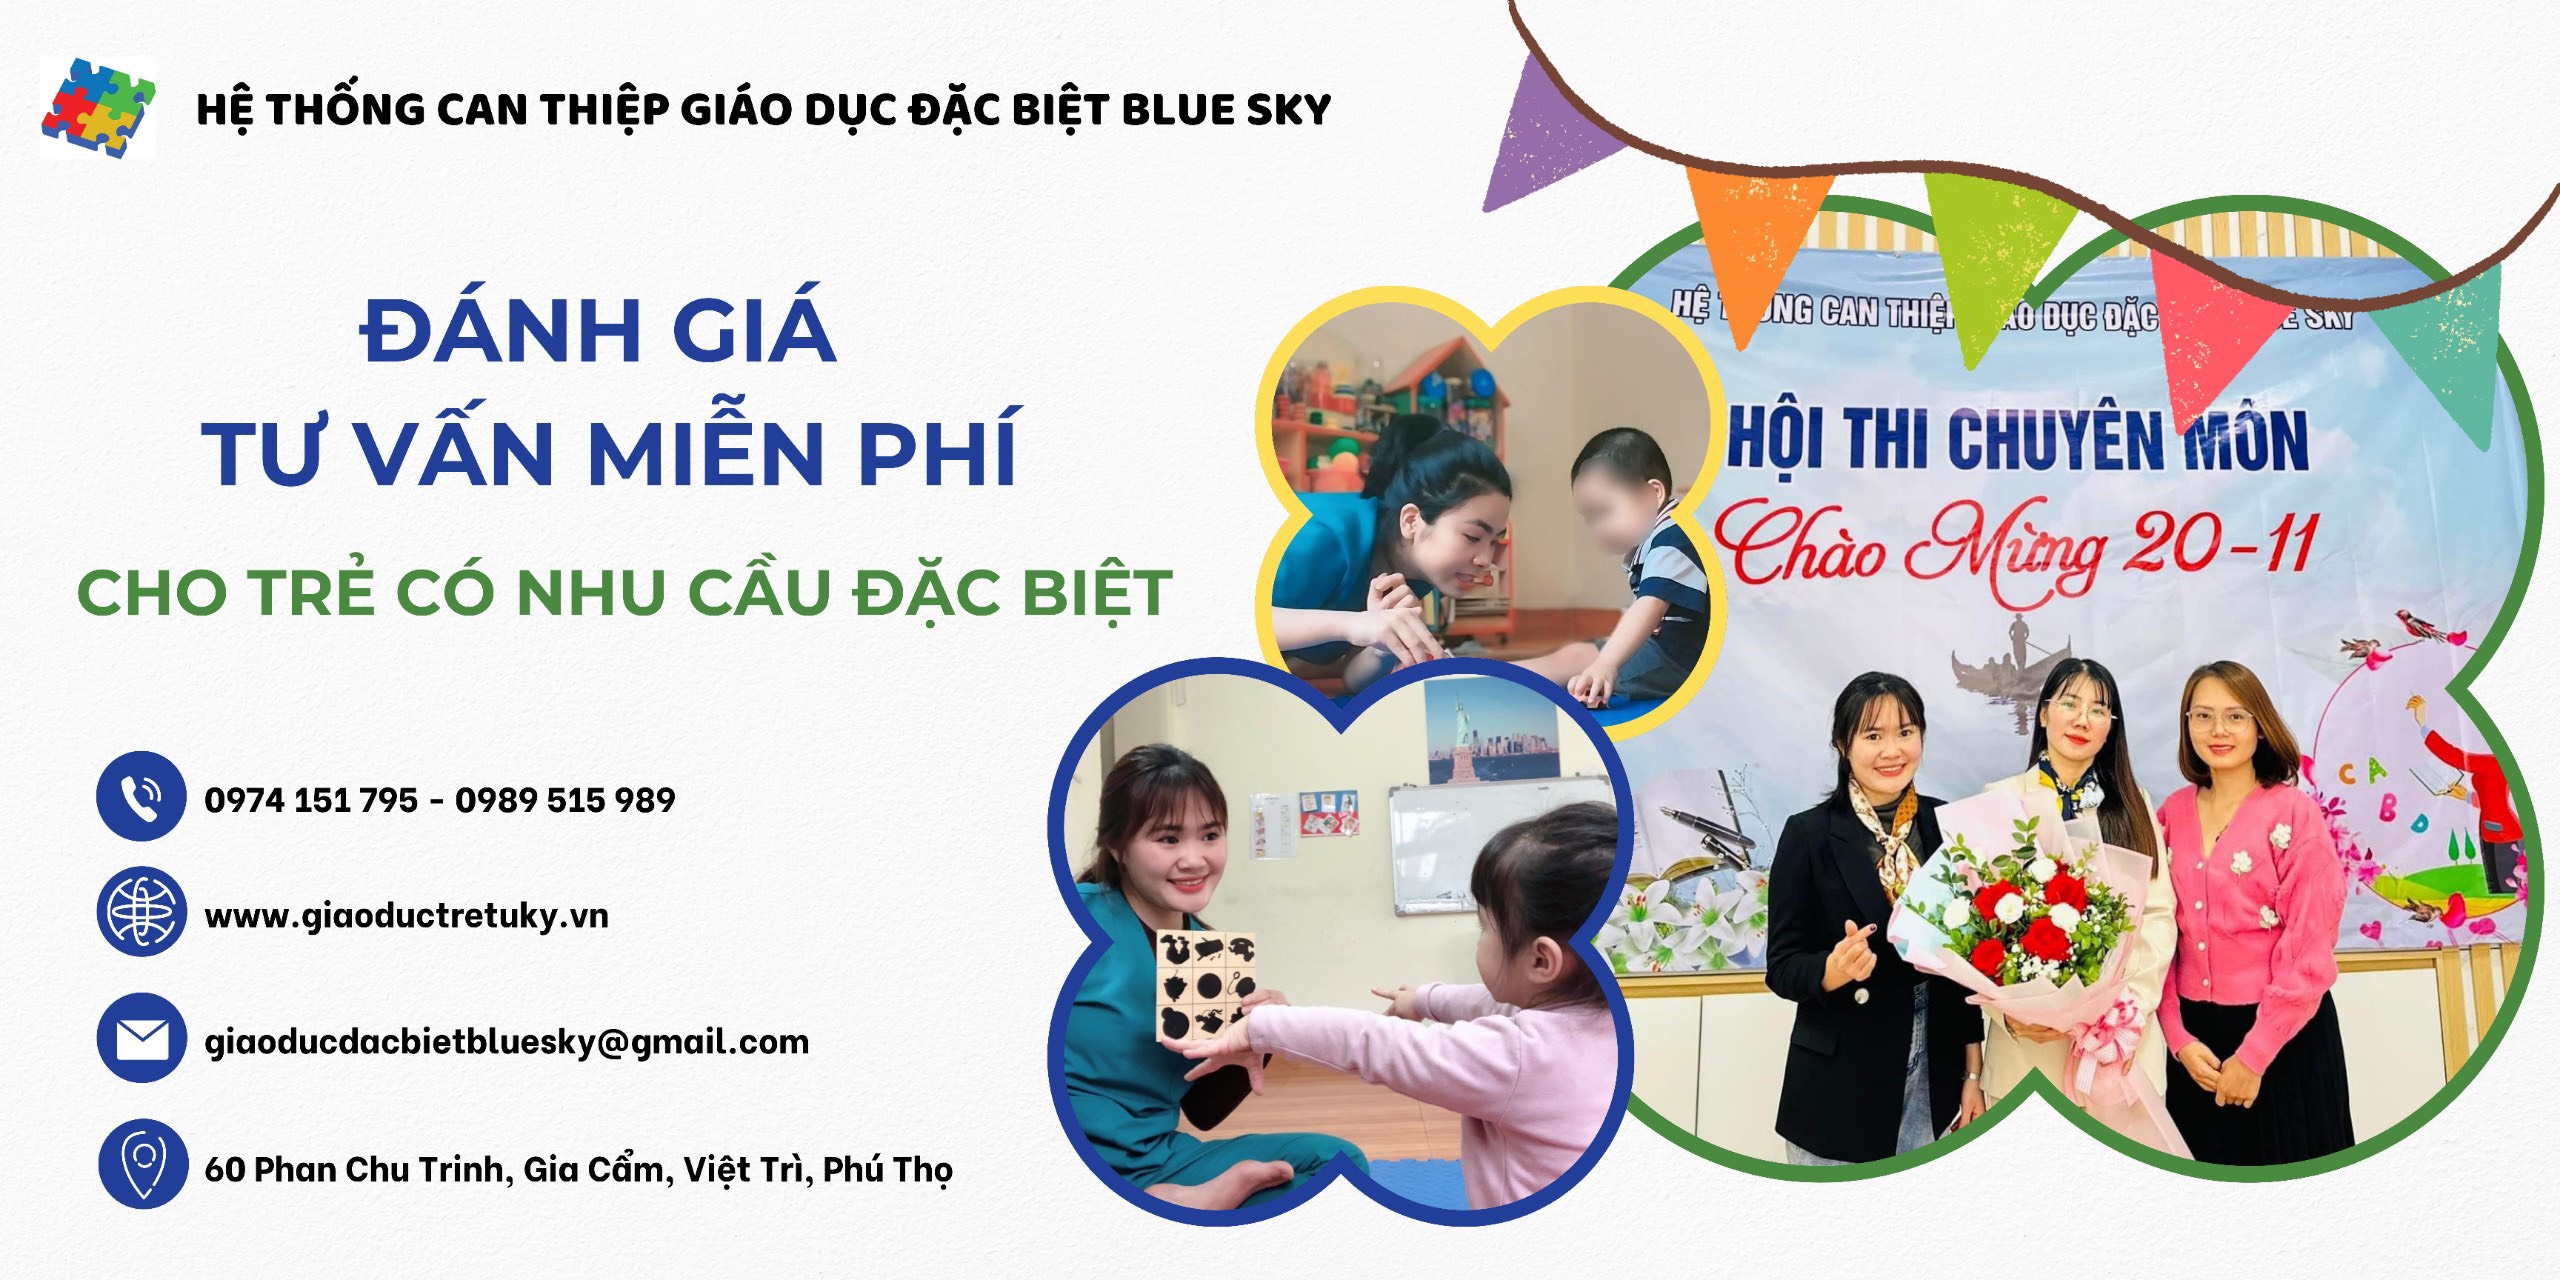 Tiếp tục triển khai đợt đánh giá và tư vấn miễn phí cho trẻ có nhu cầu đặc biệt tại cơ sở Việt Trì, Phú Thọ